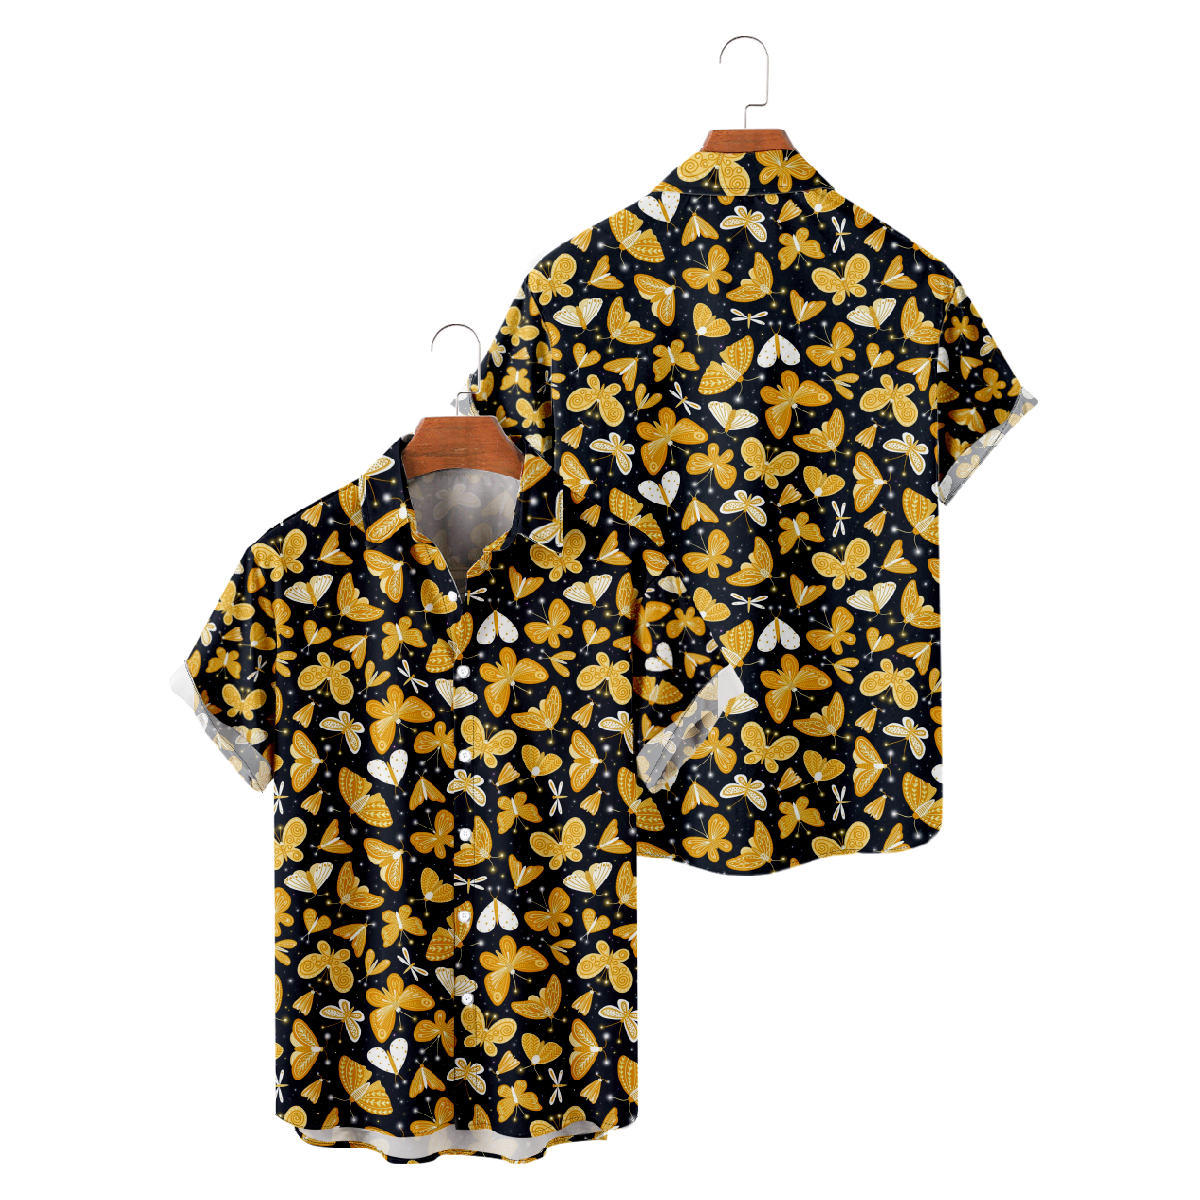 Golden Butterfly Button Up Shirt for Men Short Sleeve Shirt Regular Fit 